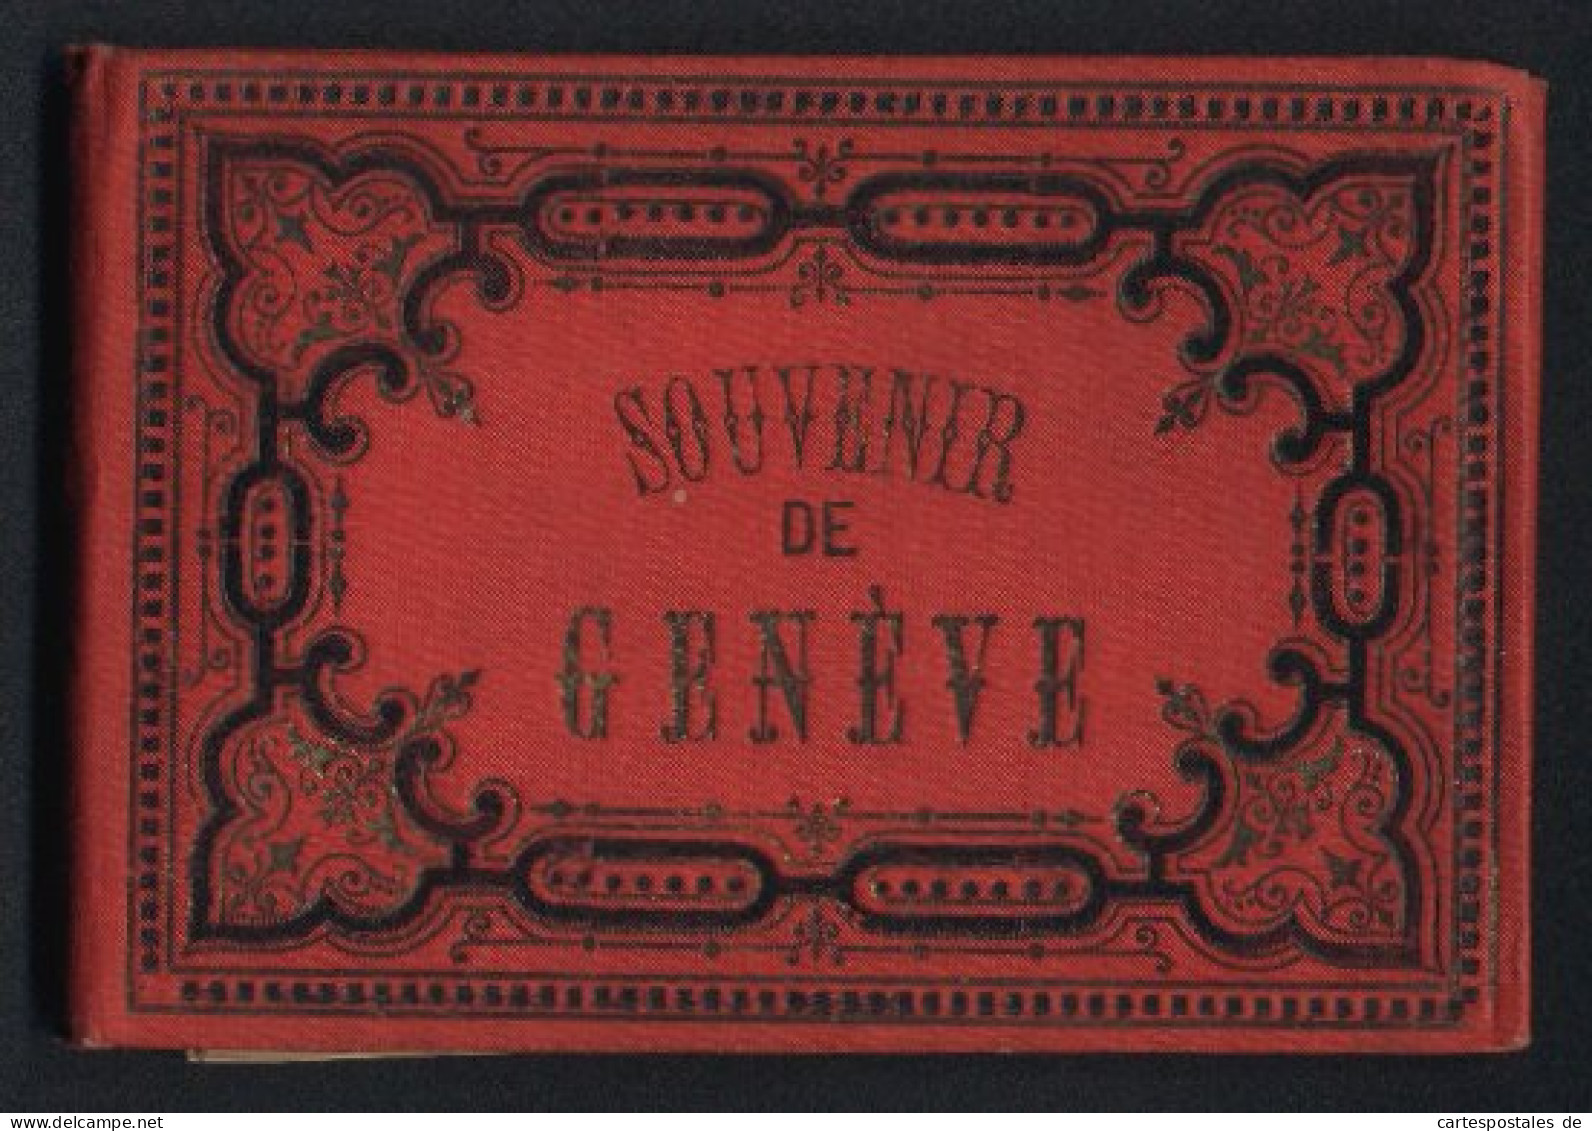 Leporello-Album Geneve Mit 24 Lithographie-Ansichten, Synagoge, Eglise Russe, Quai Du Mont Blanc, Rue Du Mont Blanc  - Litografia